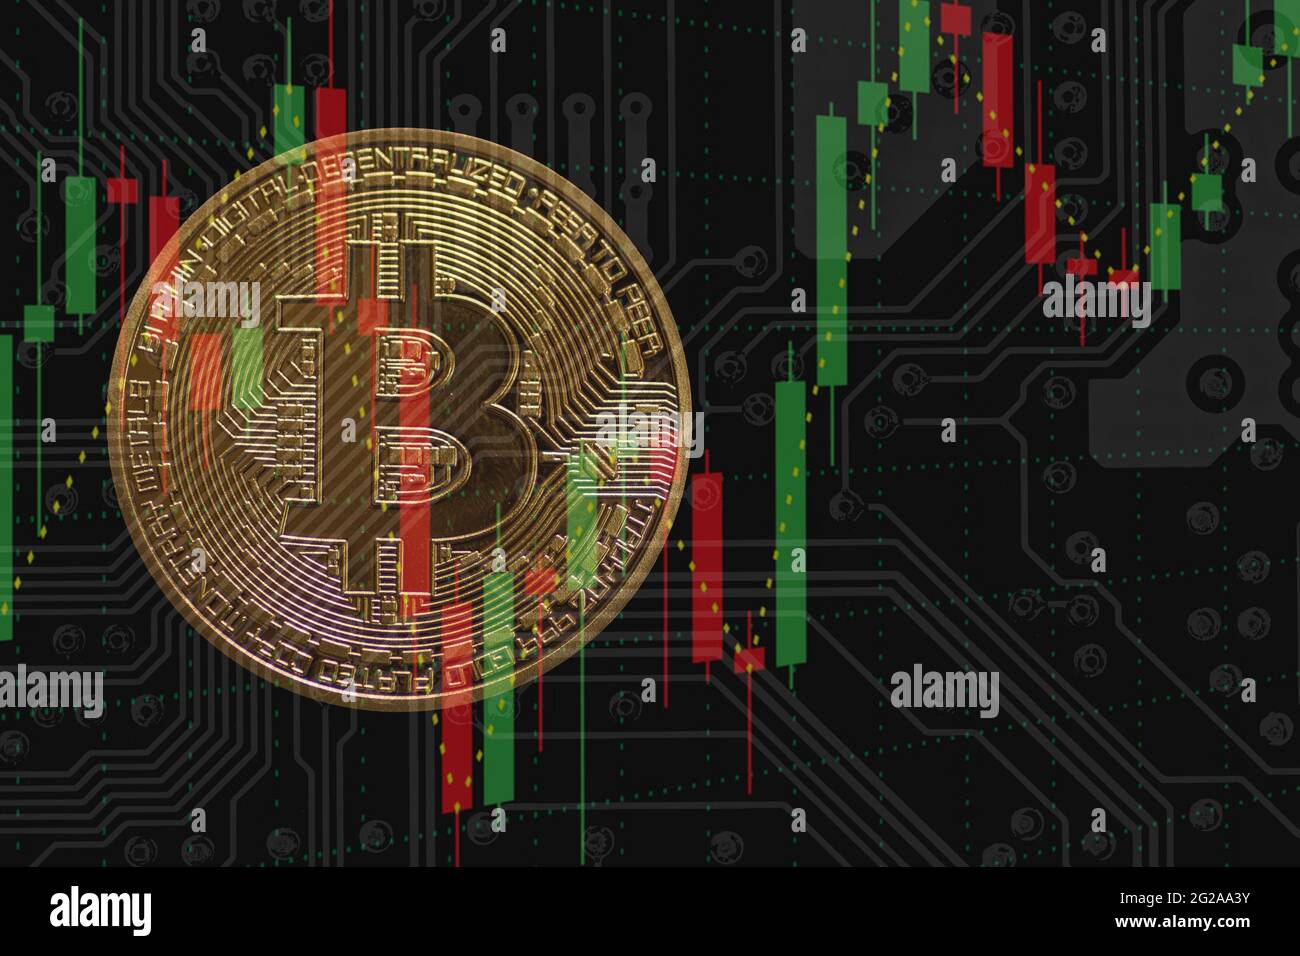 Eine wertvolle goldene Bitcoin mit einem Diagramm und einem dunklen elektrischen Schaltplan Stockfoto